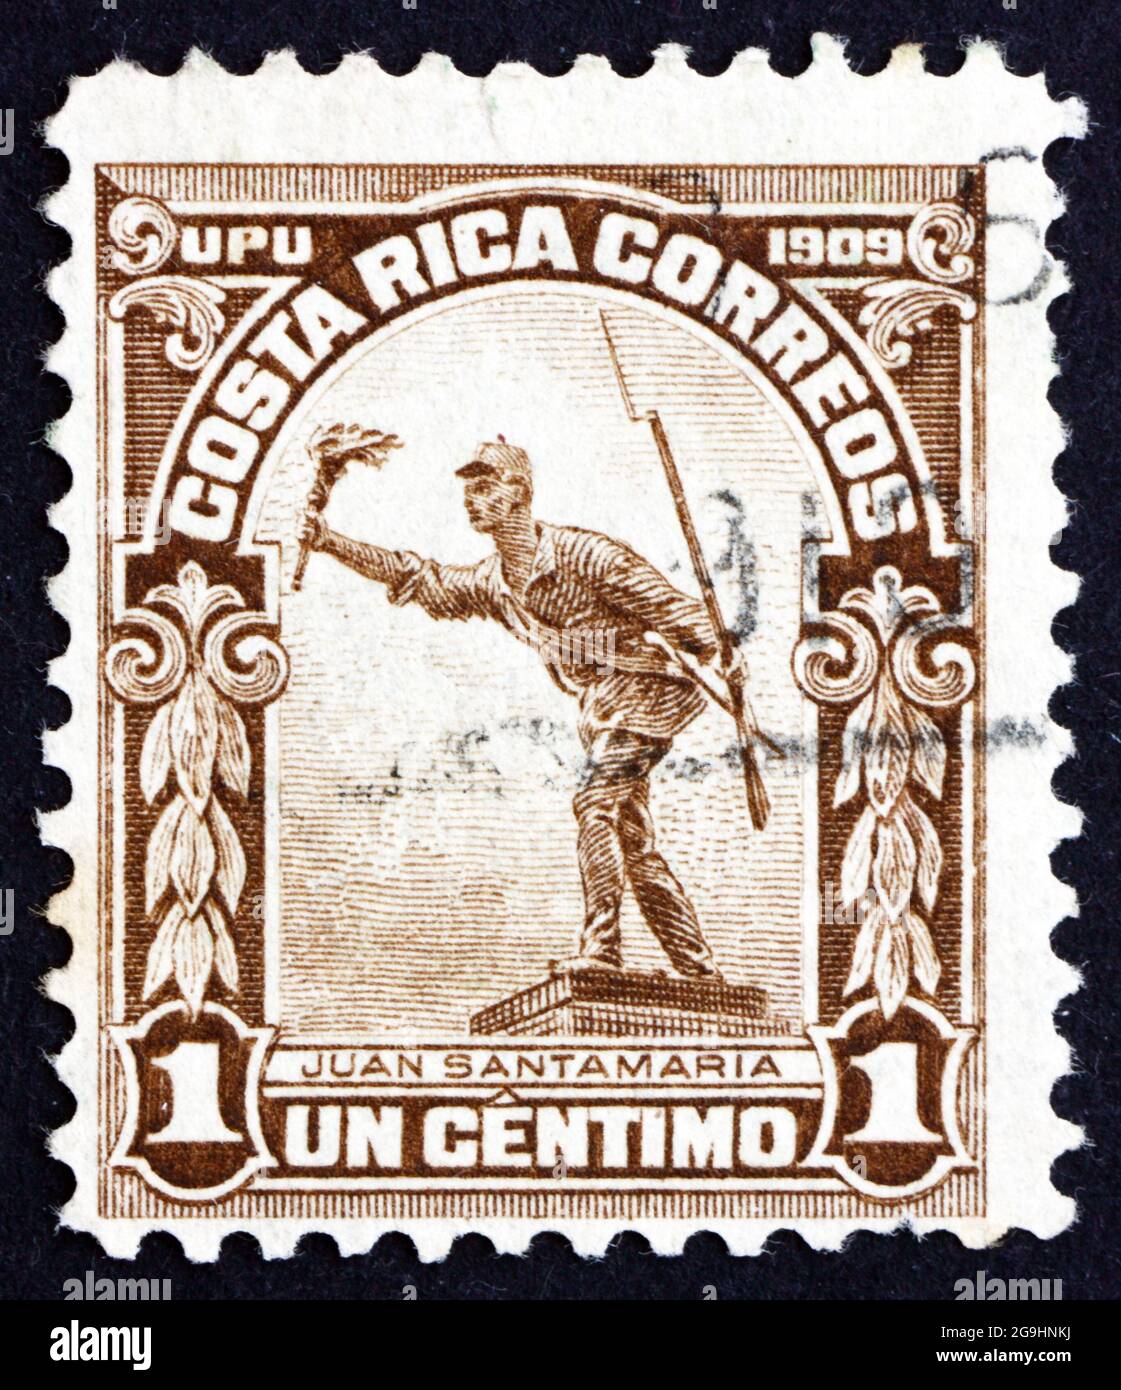 COSTA RICA - ALREDEDOR de 1910: Un sello impreso en Costa Rica muestra la Estatua de Juan Santamaría, Héroe Nacional de la República de Costa Rica, alrededor de 1910 Foto de stock